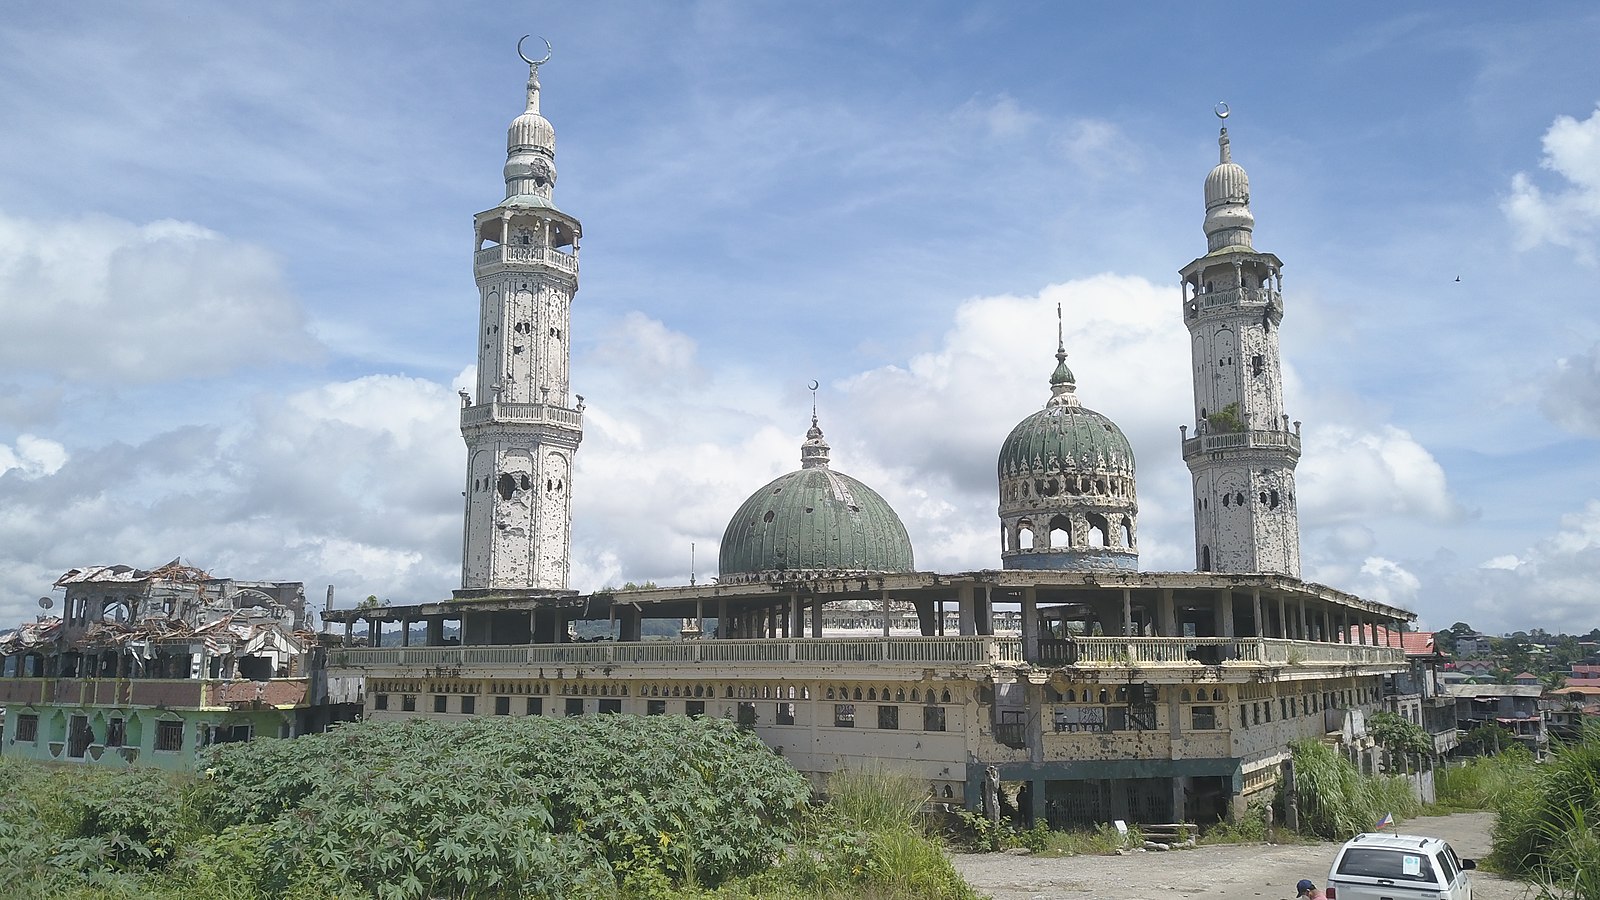 Marawi Mosque damaged